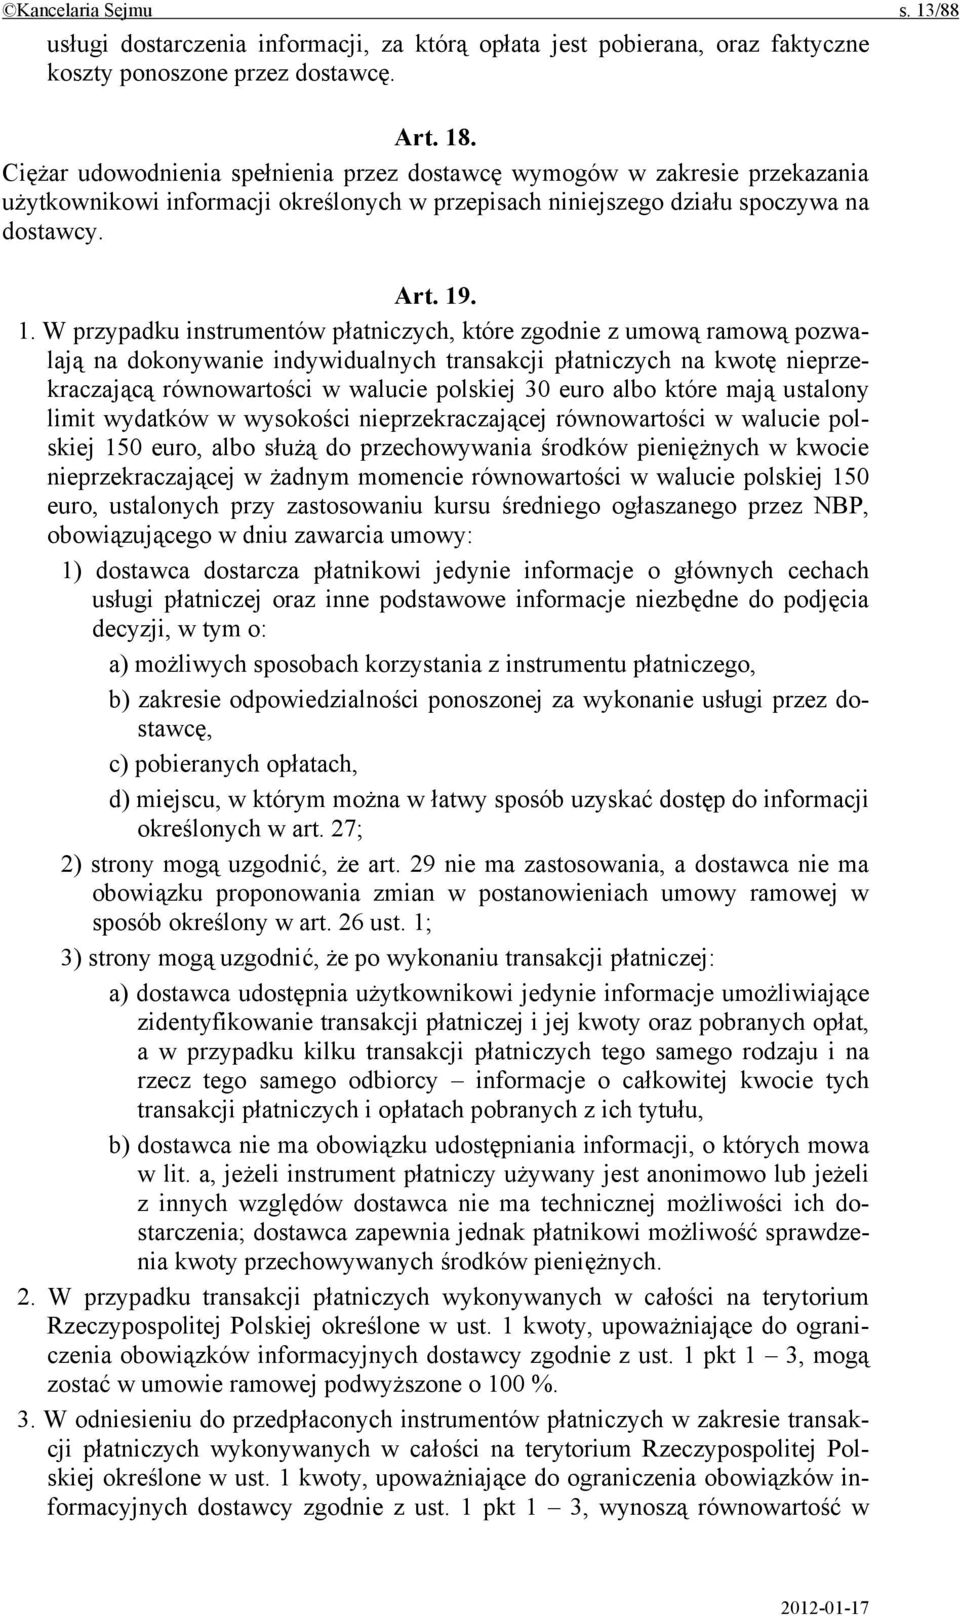 . 1. W przypadku instrumentów płatniczych, które zgodnie z umową ramową pozwalają na dokonywanie indywidualnych transakcji płatniczych na kwotę nieprzekraczającą równowartości w walucie polskiej 30